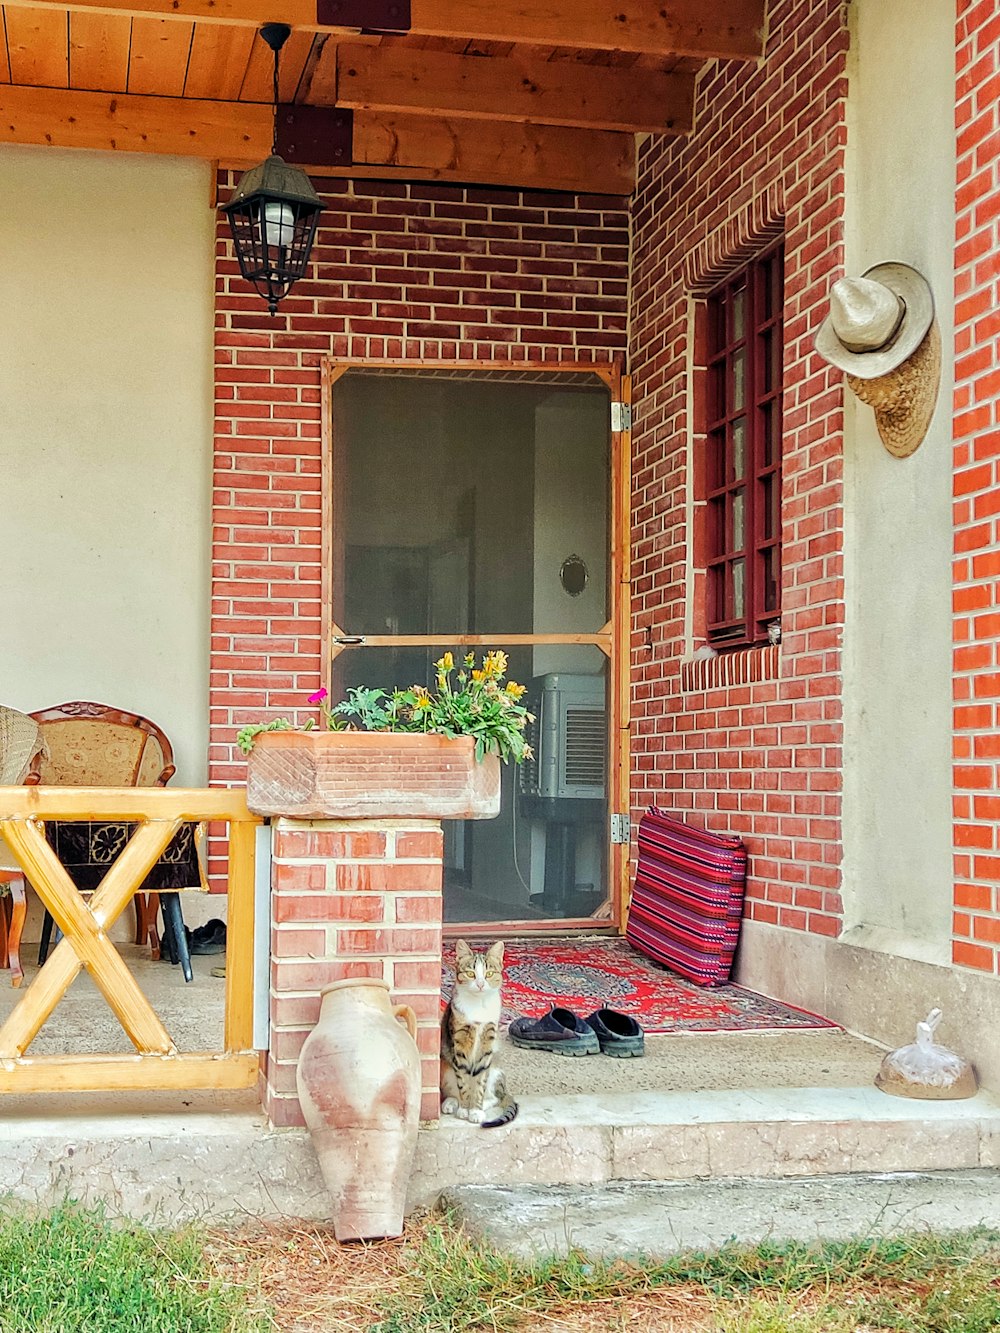 현관에 앉아있는 고양이